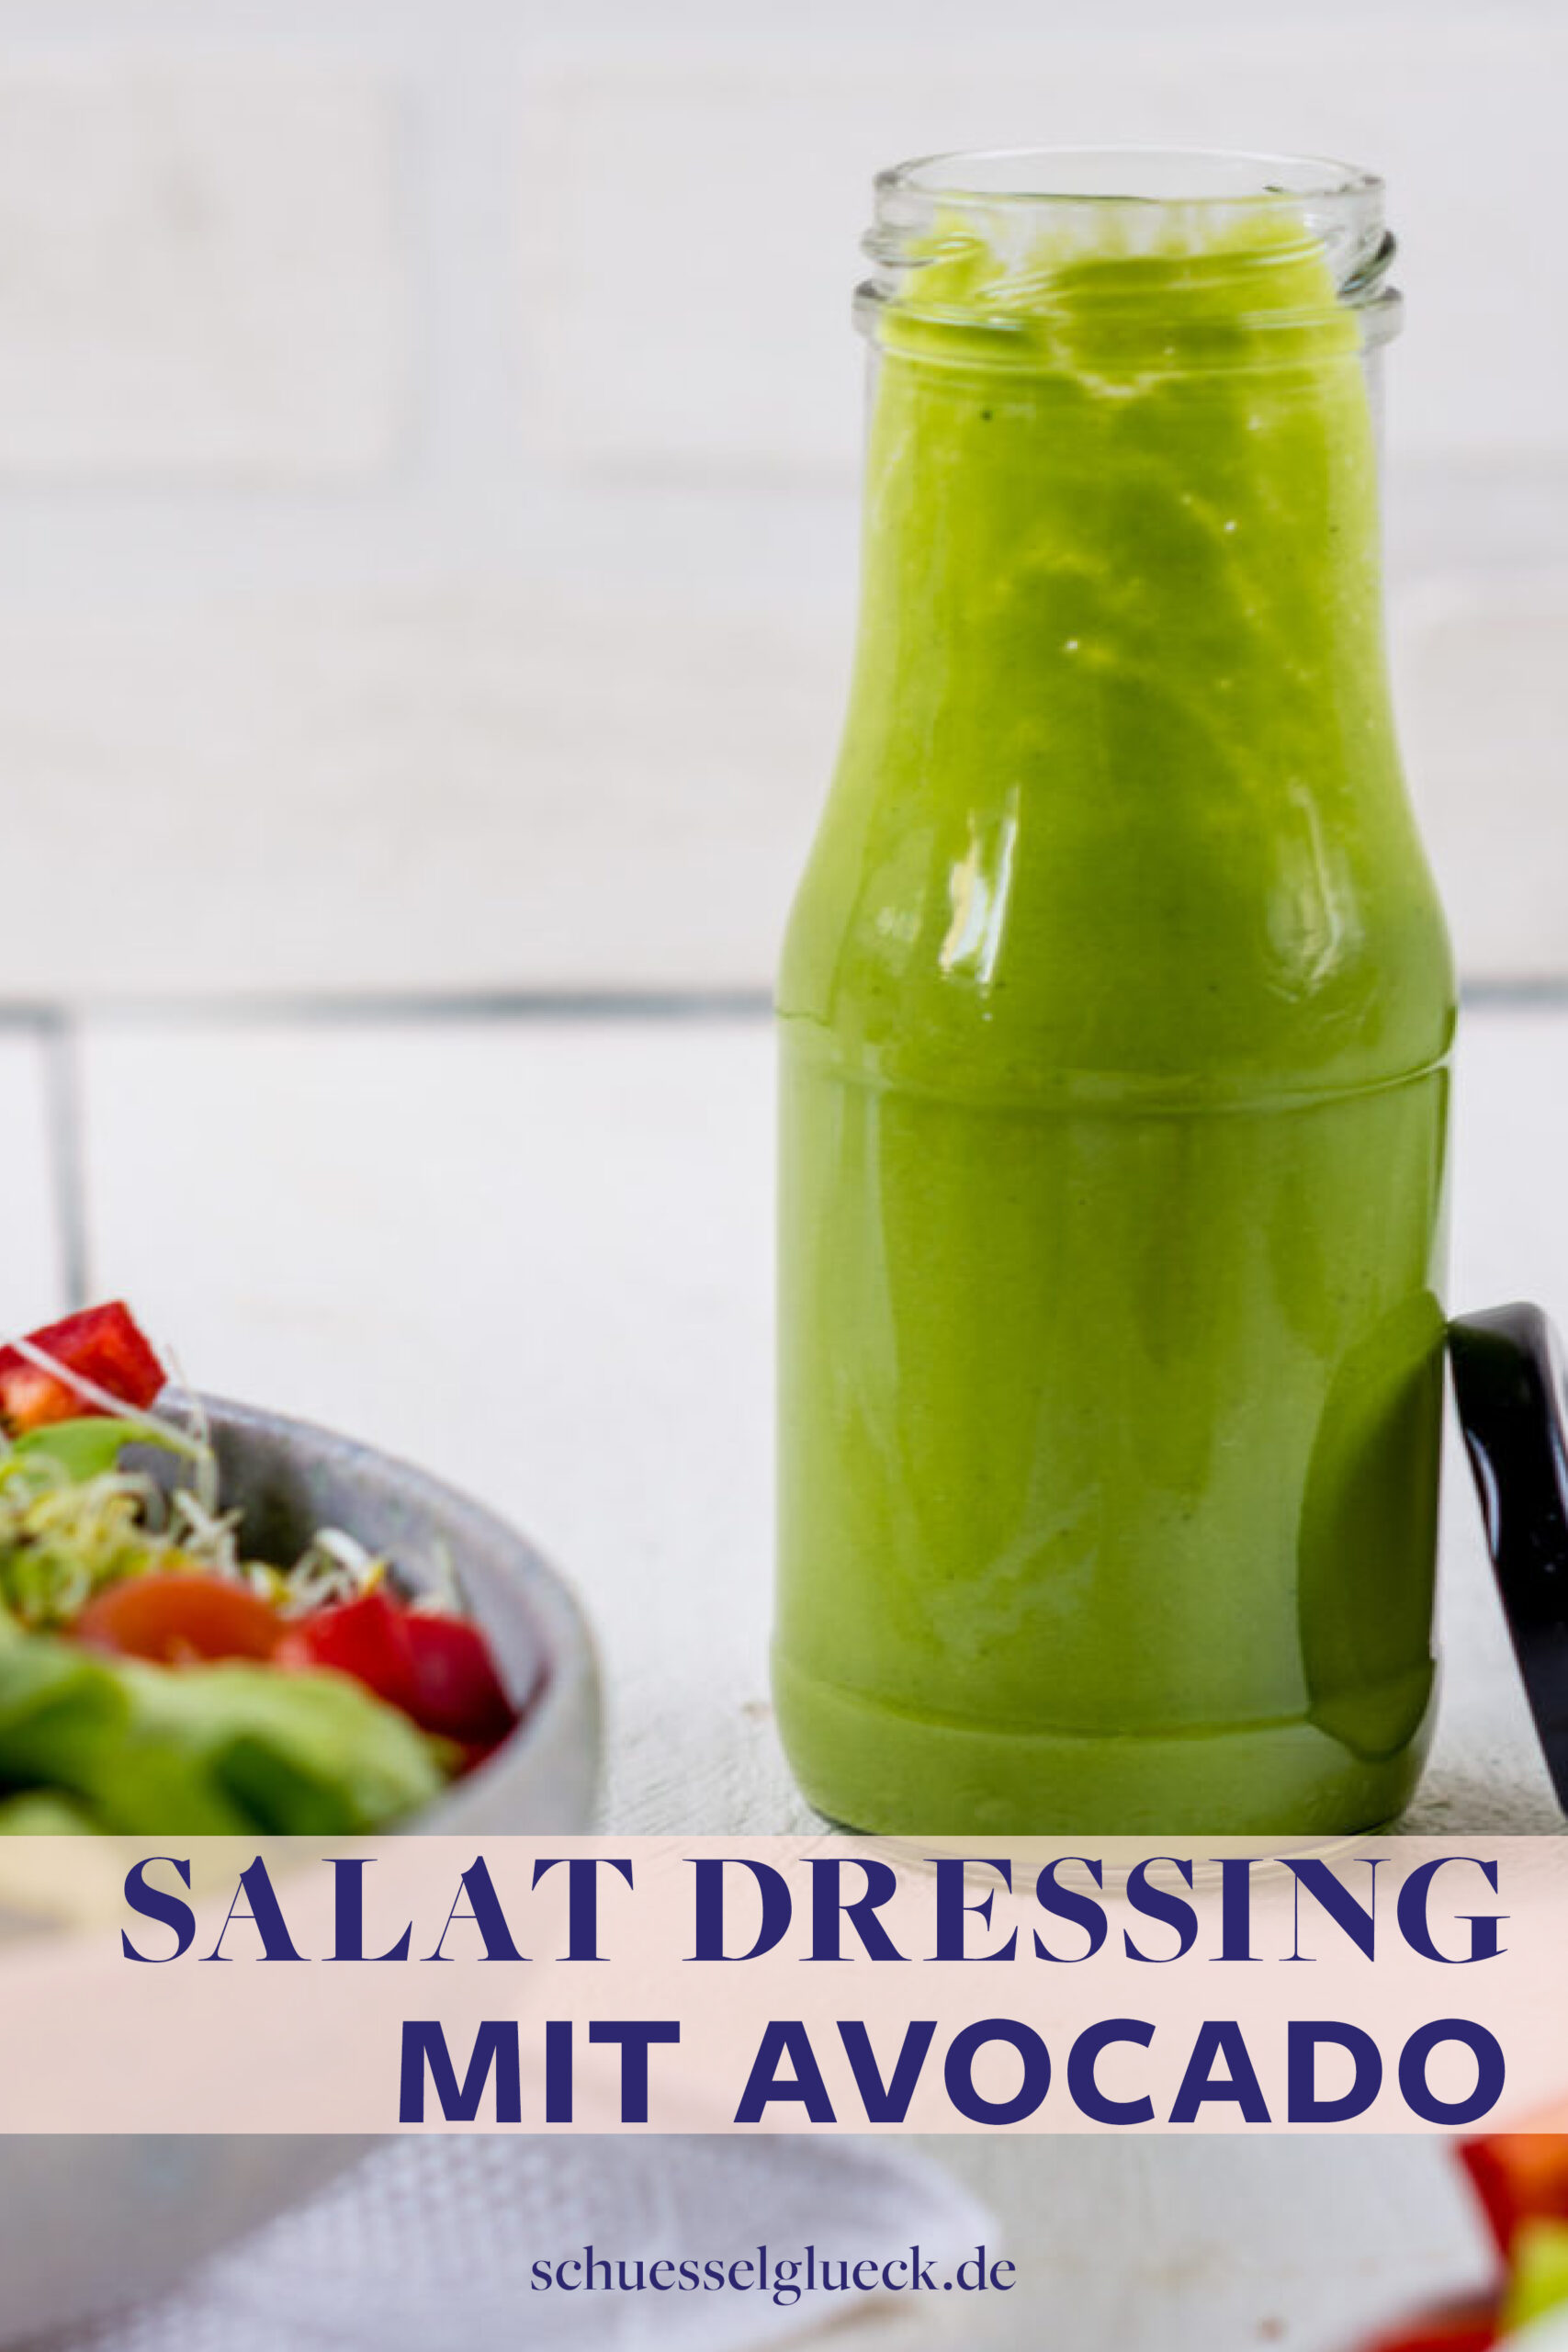 Herrlich cremiges Avocado Dressing mit frischen Kräutern – macht jeden Salat zum Lieblingssalat!